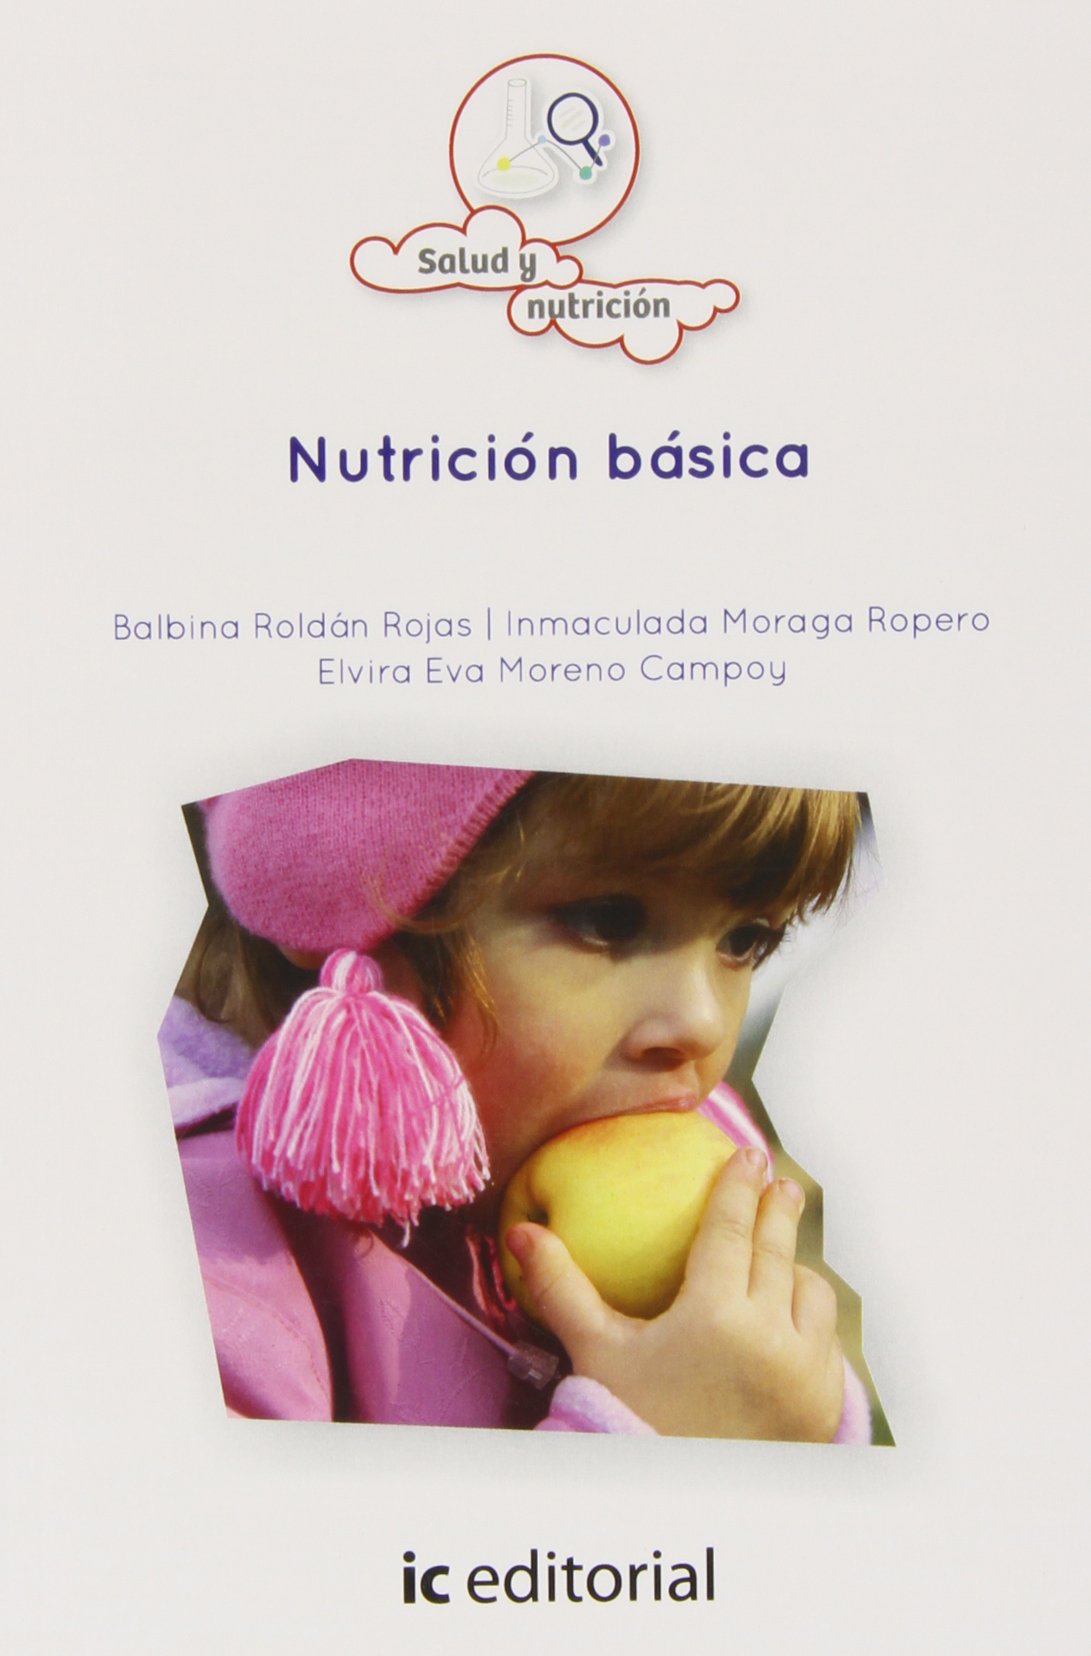 Imagen de portada del libro Nutricion básica